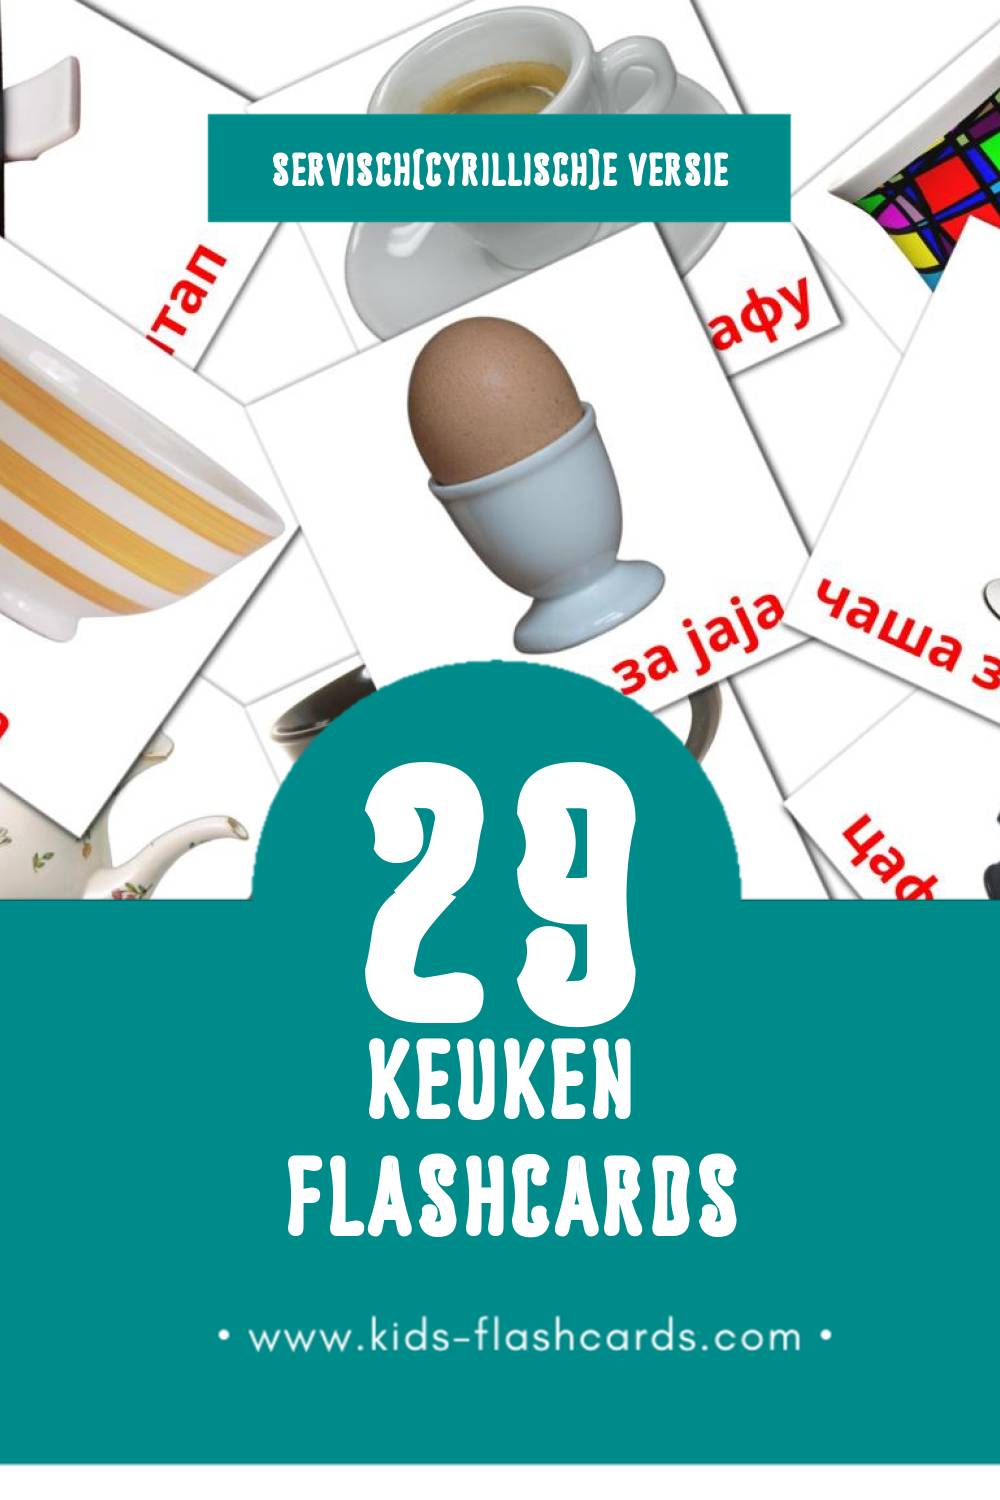 Visuele у кухињи Flashcards voor Kleuters (29 kaarten in het Servisch(cyrillisch))